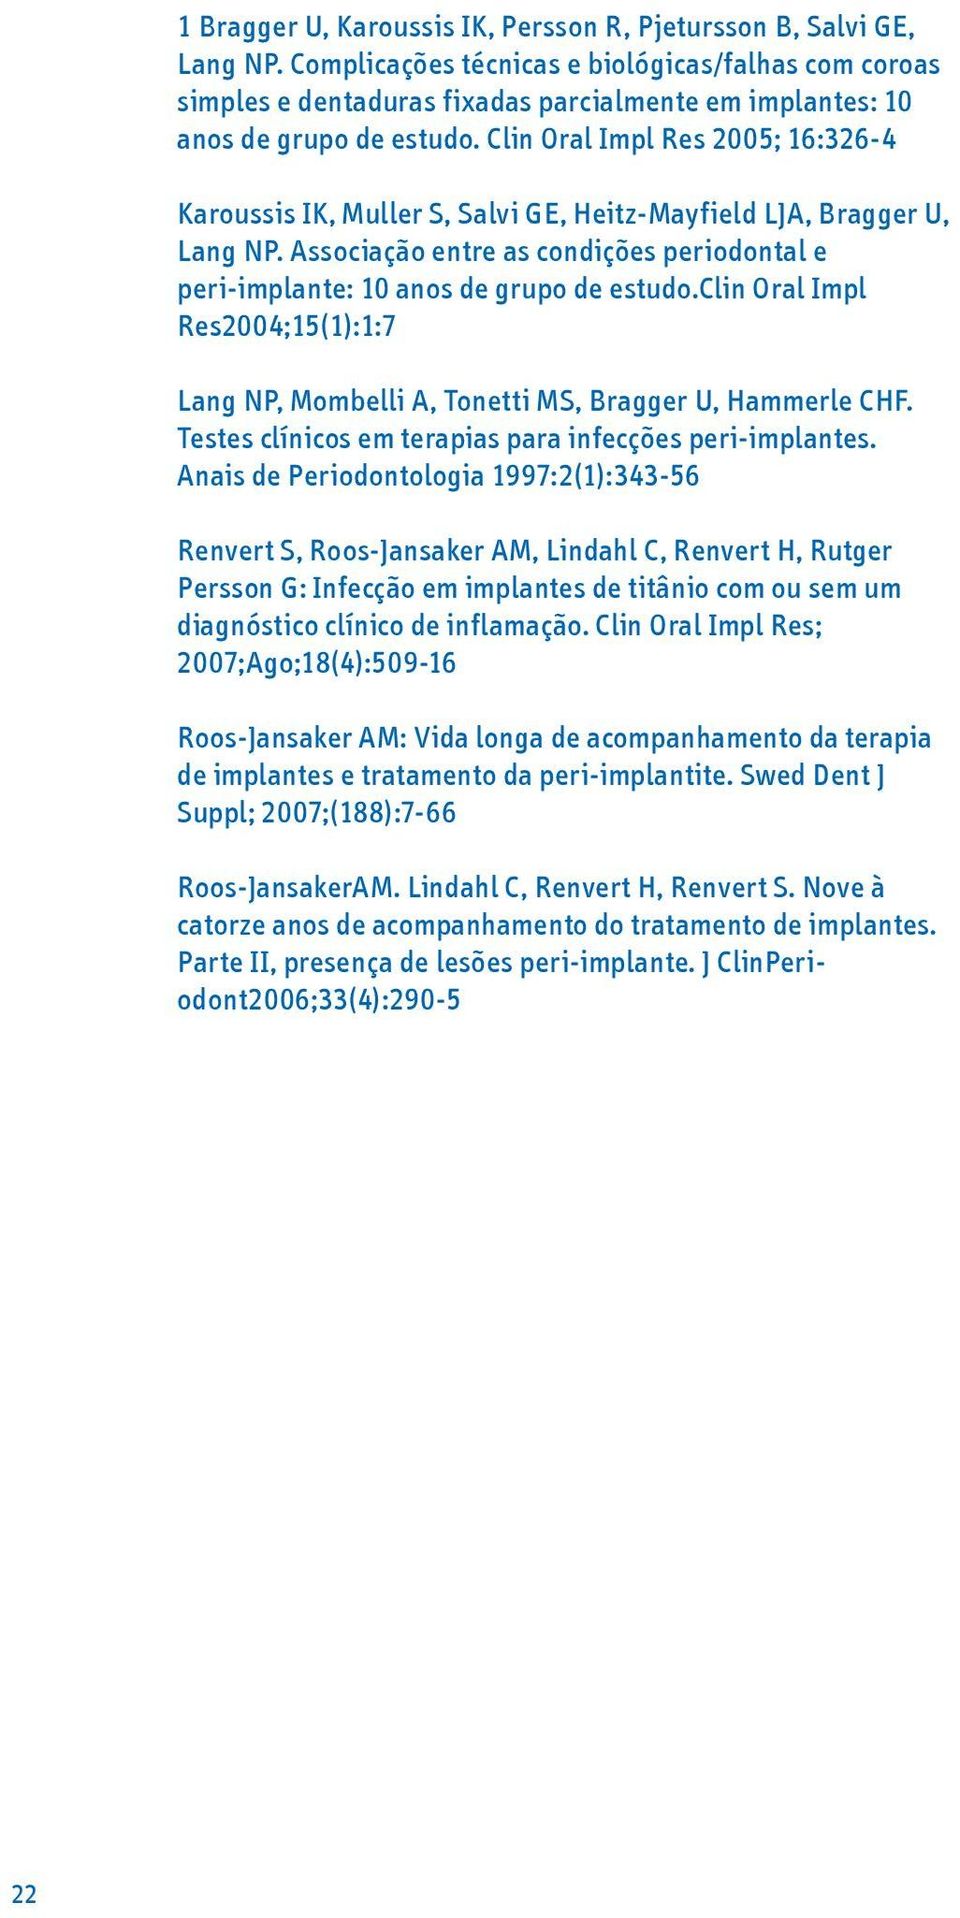 Clin Oral Impl Res 2005; 16:326-4 Karoussis IK, Muller S, Salvi GE, Heitz-Mayfield LJA, Bragger U, Lang NP. Associação entre as condições periodontal e peri-implante: 10 anos de grupo de estudo.